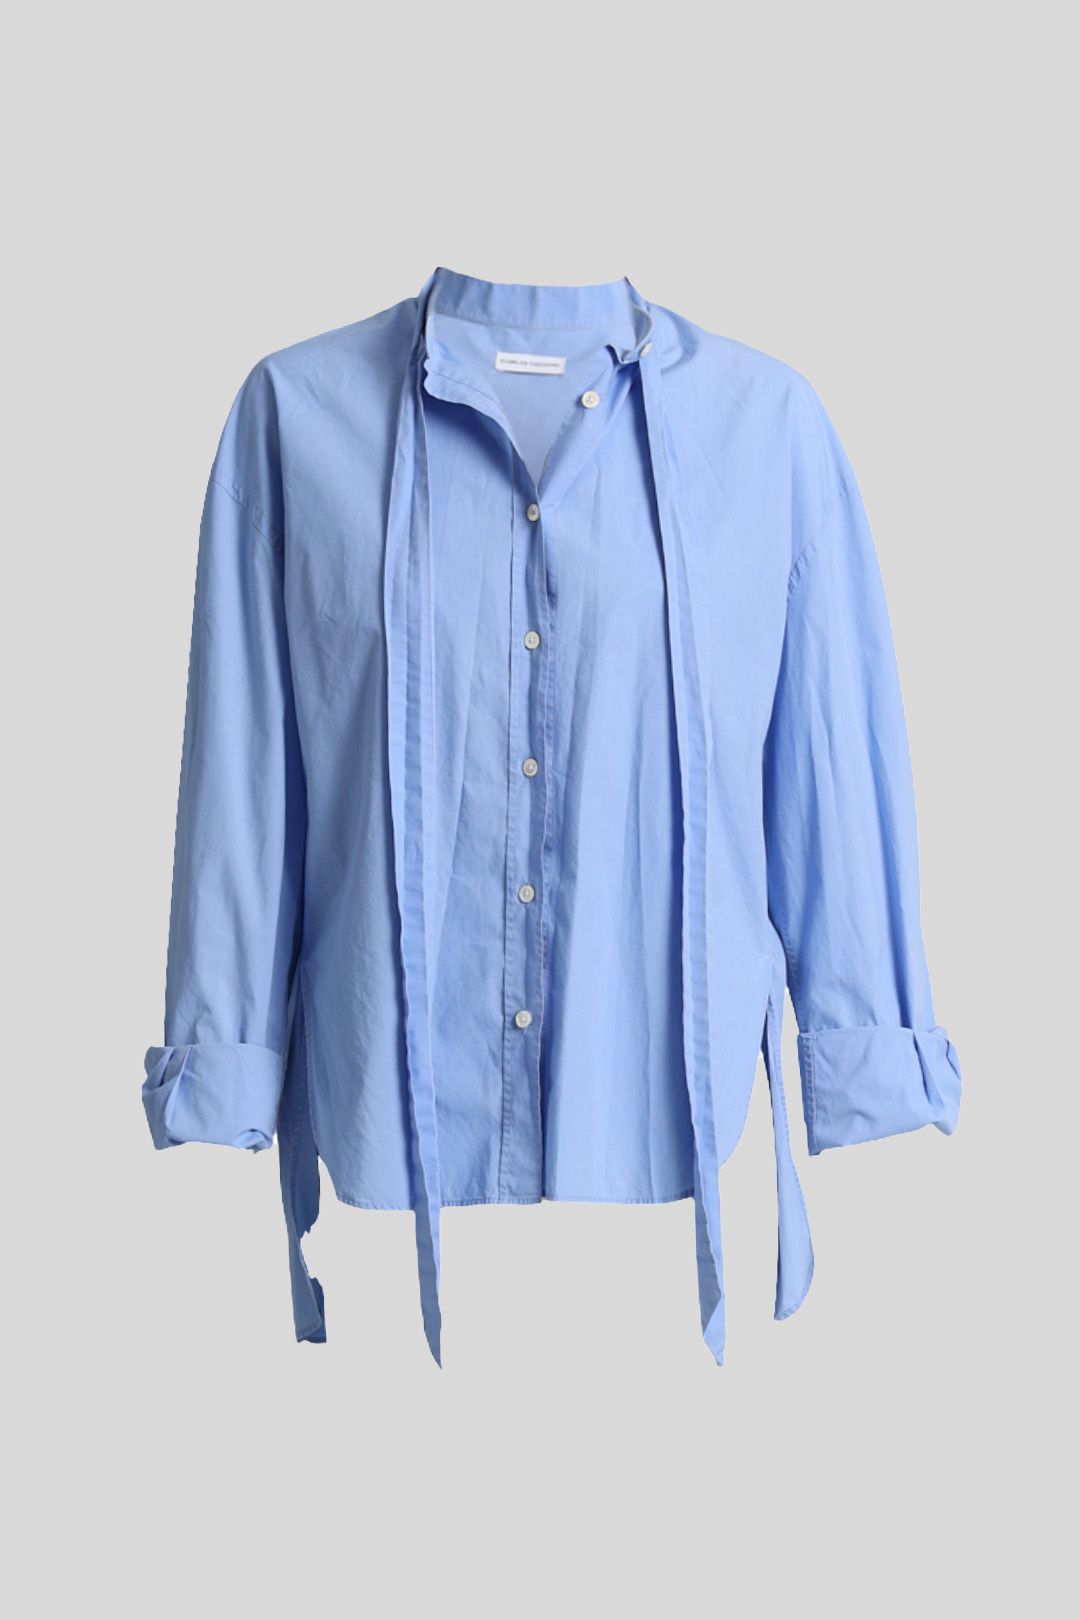 Scanlan Theodore Blue Cotton Shirt with Neck Tie